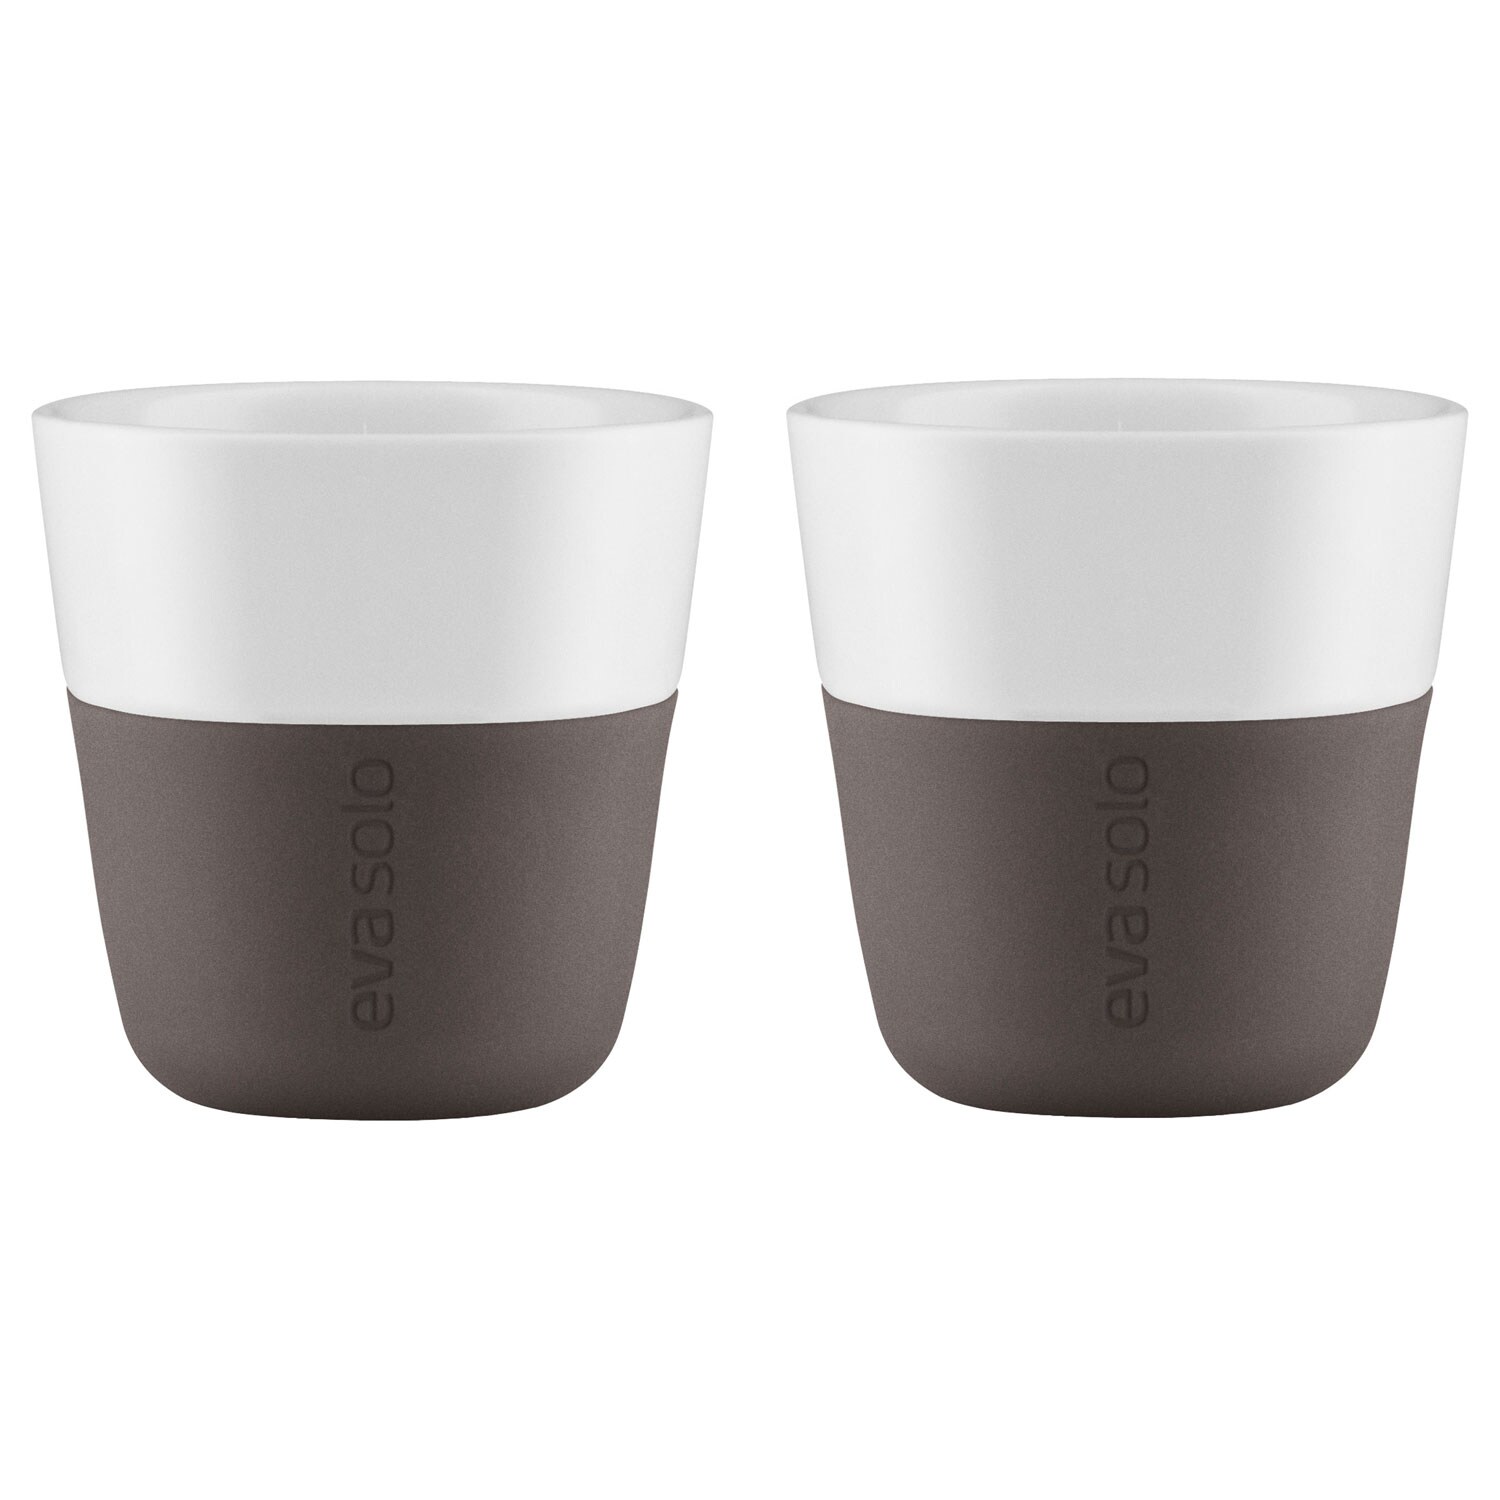 Eva Solo EVA SOLO x 2 Coffee Mugs Cups White & Grey 